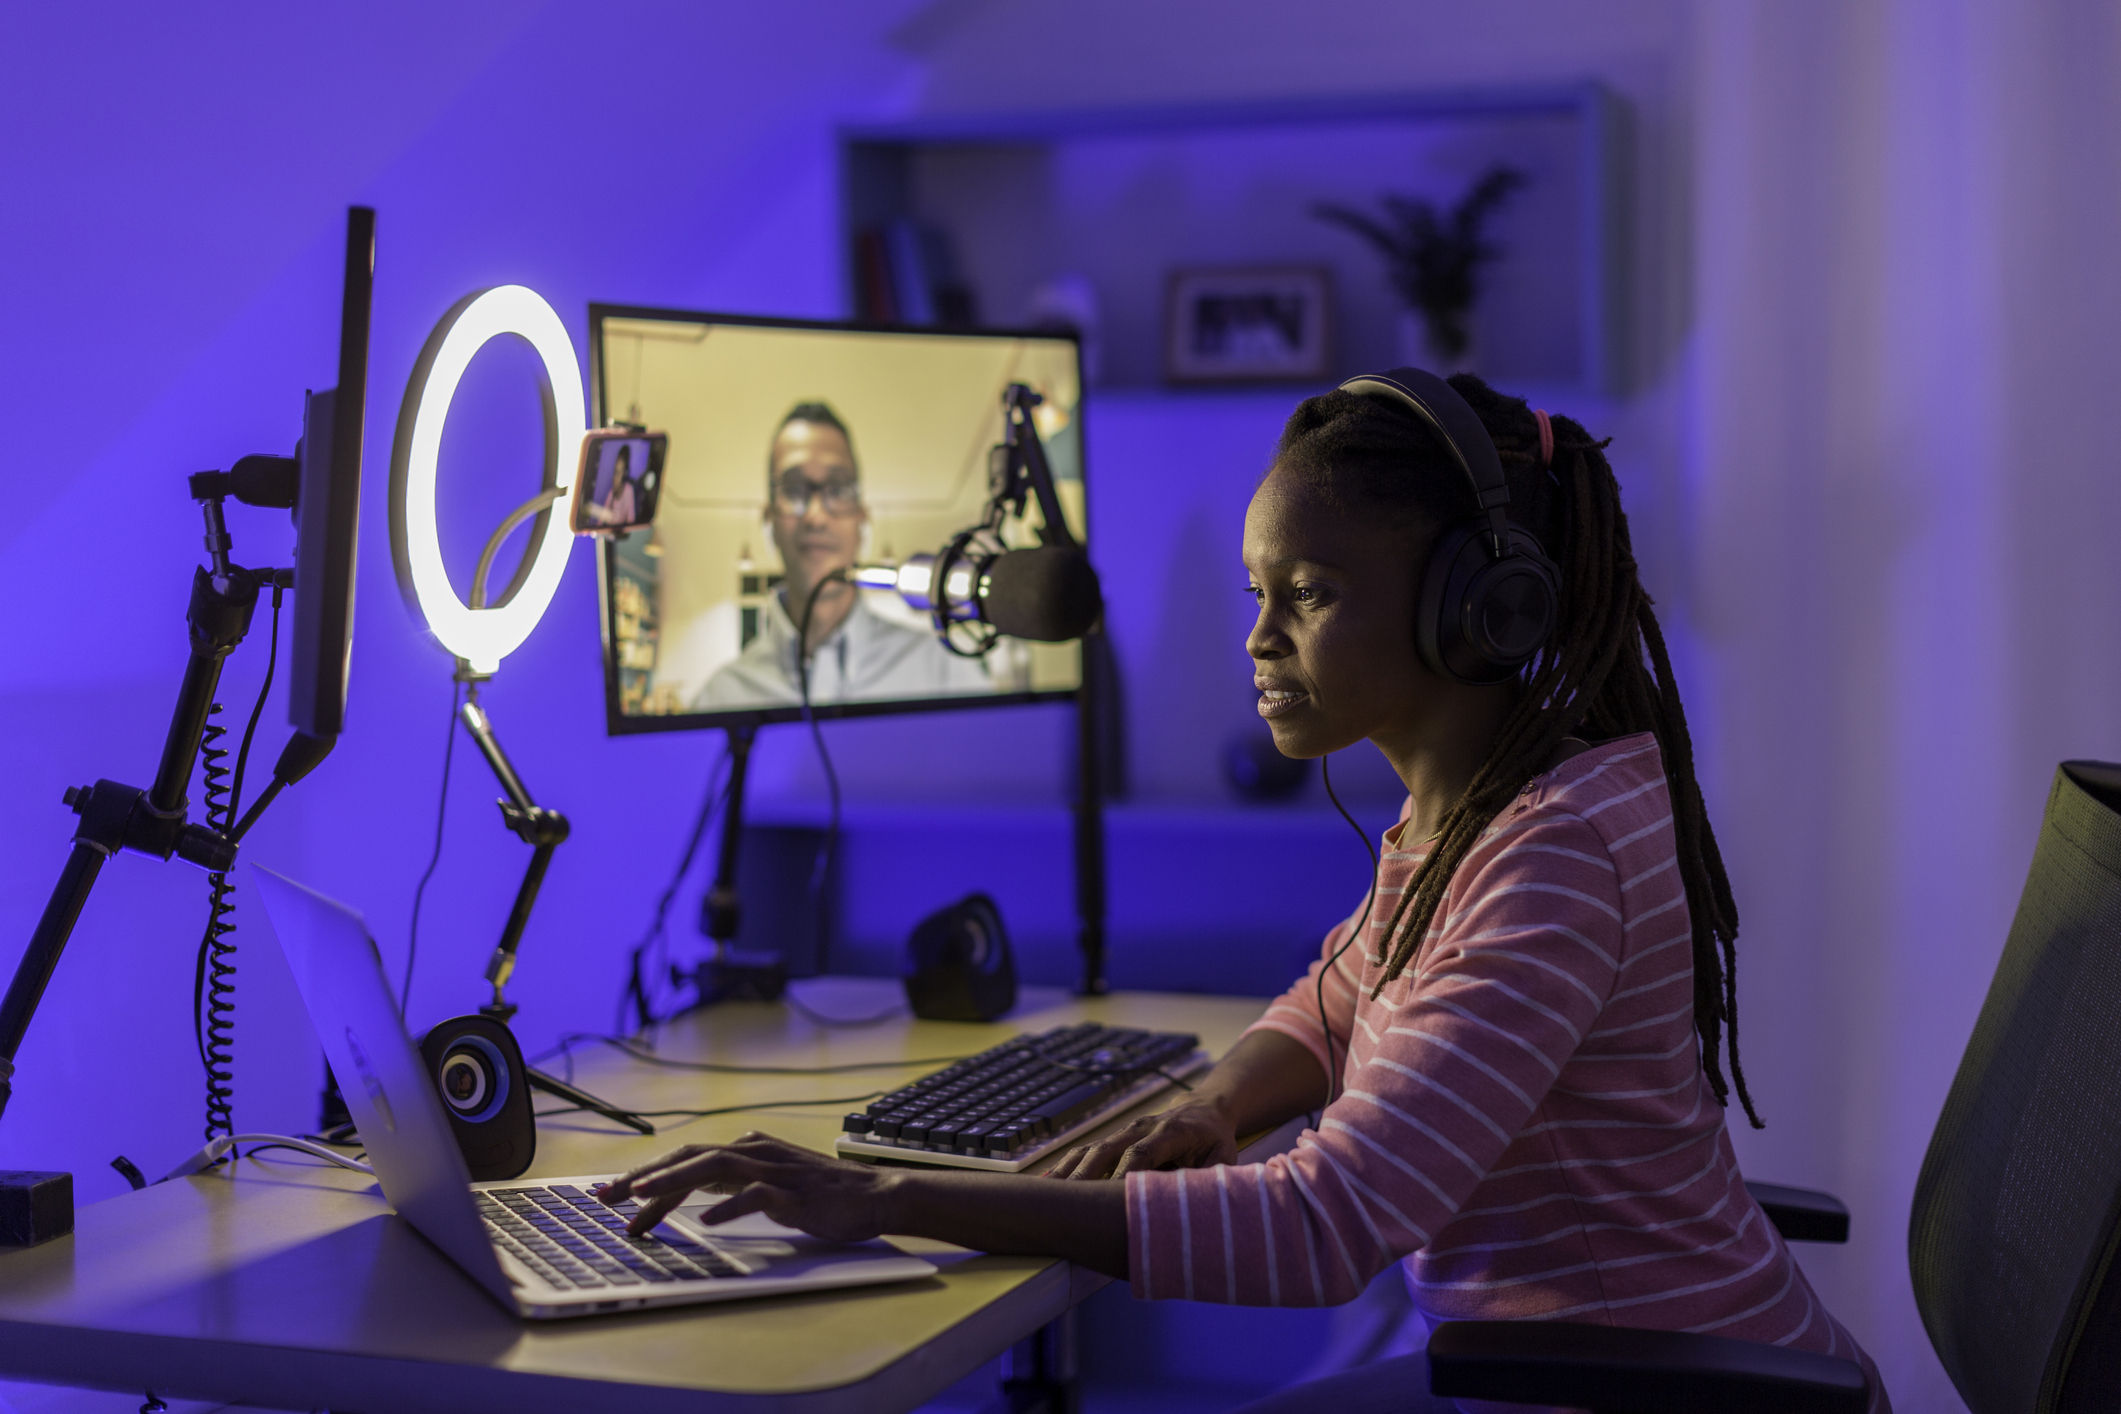 Jeune femme enregistrant une émission. Elle porte un casque, se tient devant un micro et un laptop, et est en vidéoconférence avec une jeune homme sur un écran fixe.